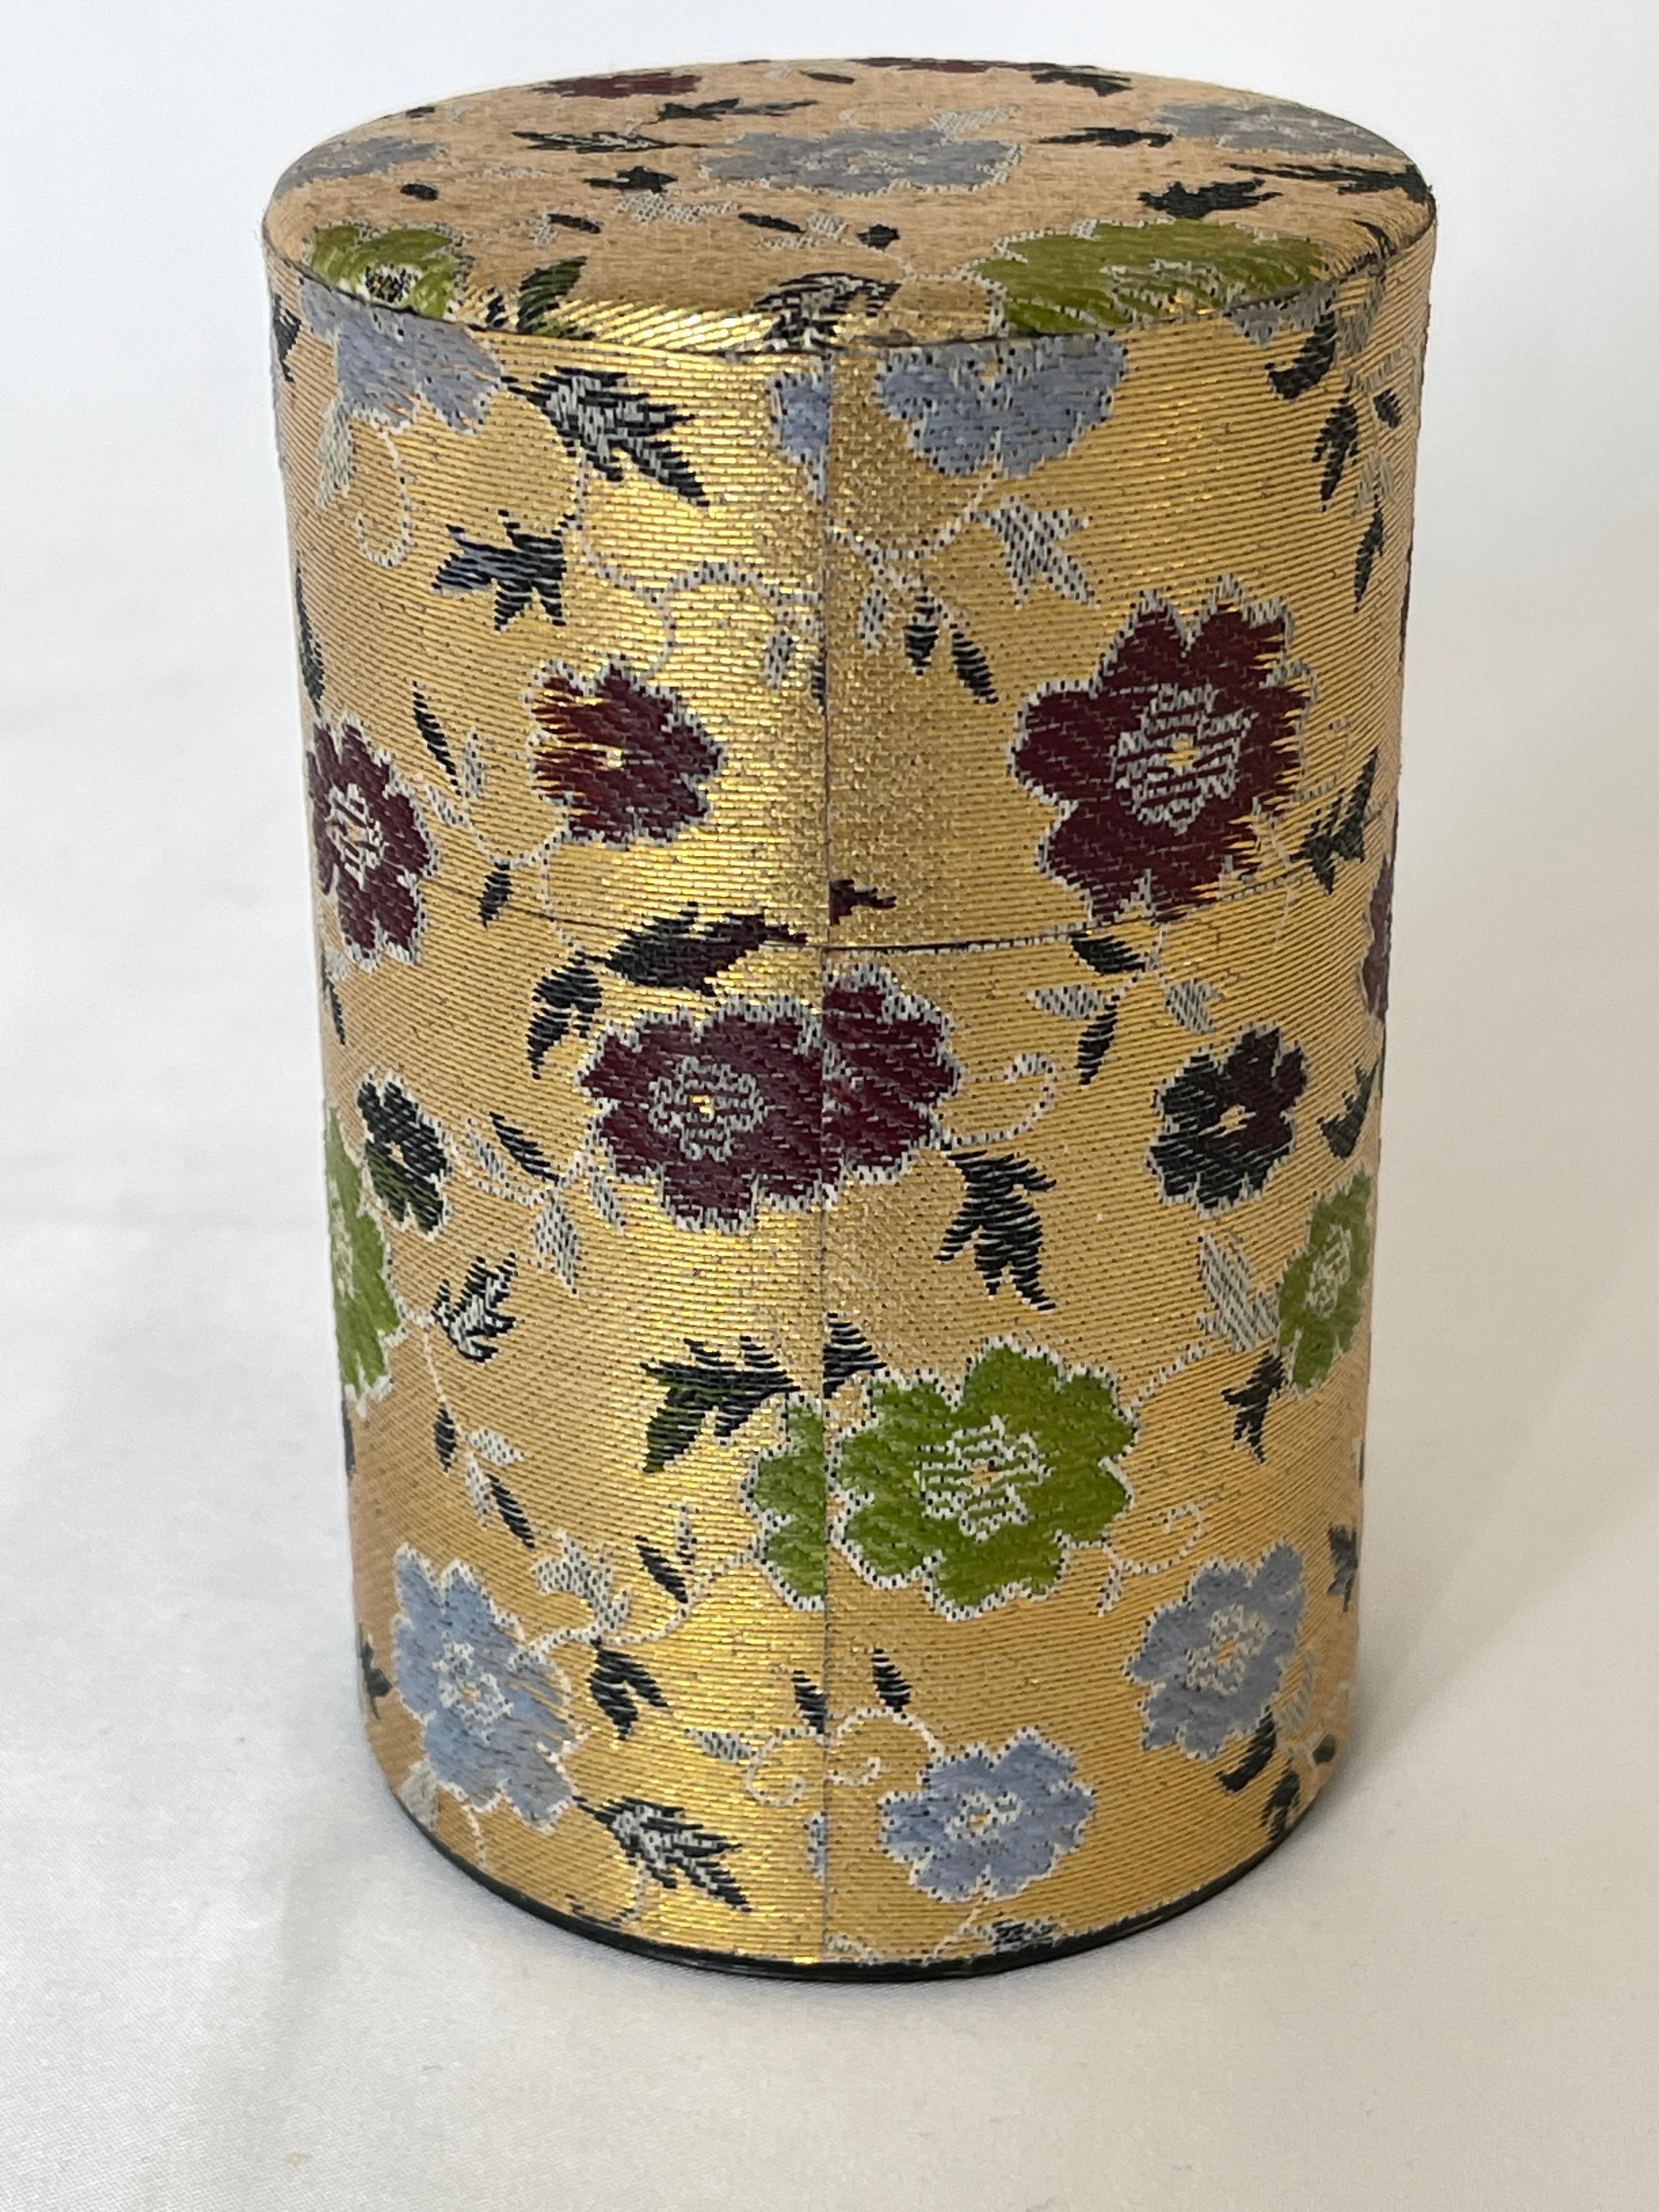 Boîte à thé en fer blanc des années 1960 recouverte d'un tissu japonais traditionnel doré à motifs floraux. Deux couvercles, l'un intérieur et l'autre extérieur, permettent de conserver la fraîcheur des feuilles de thé.